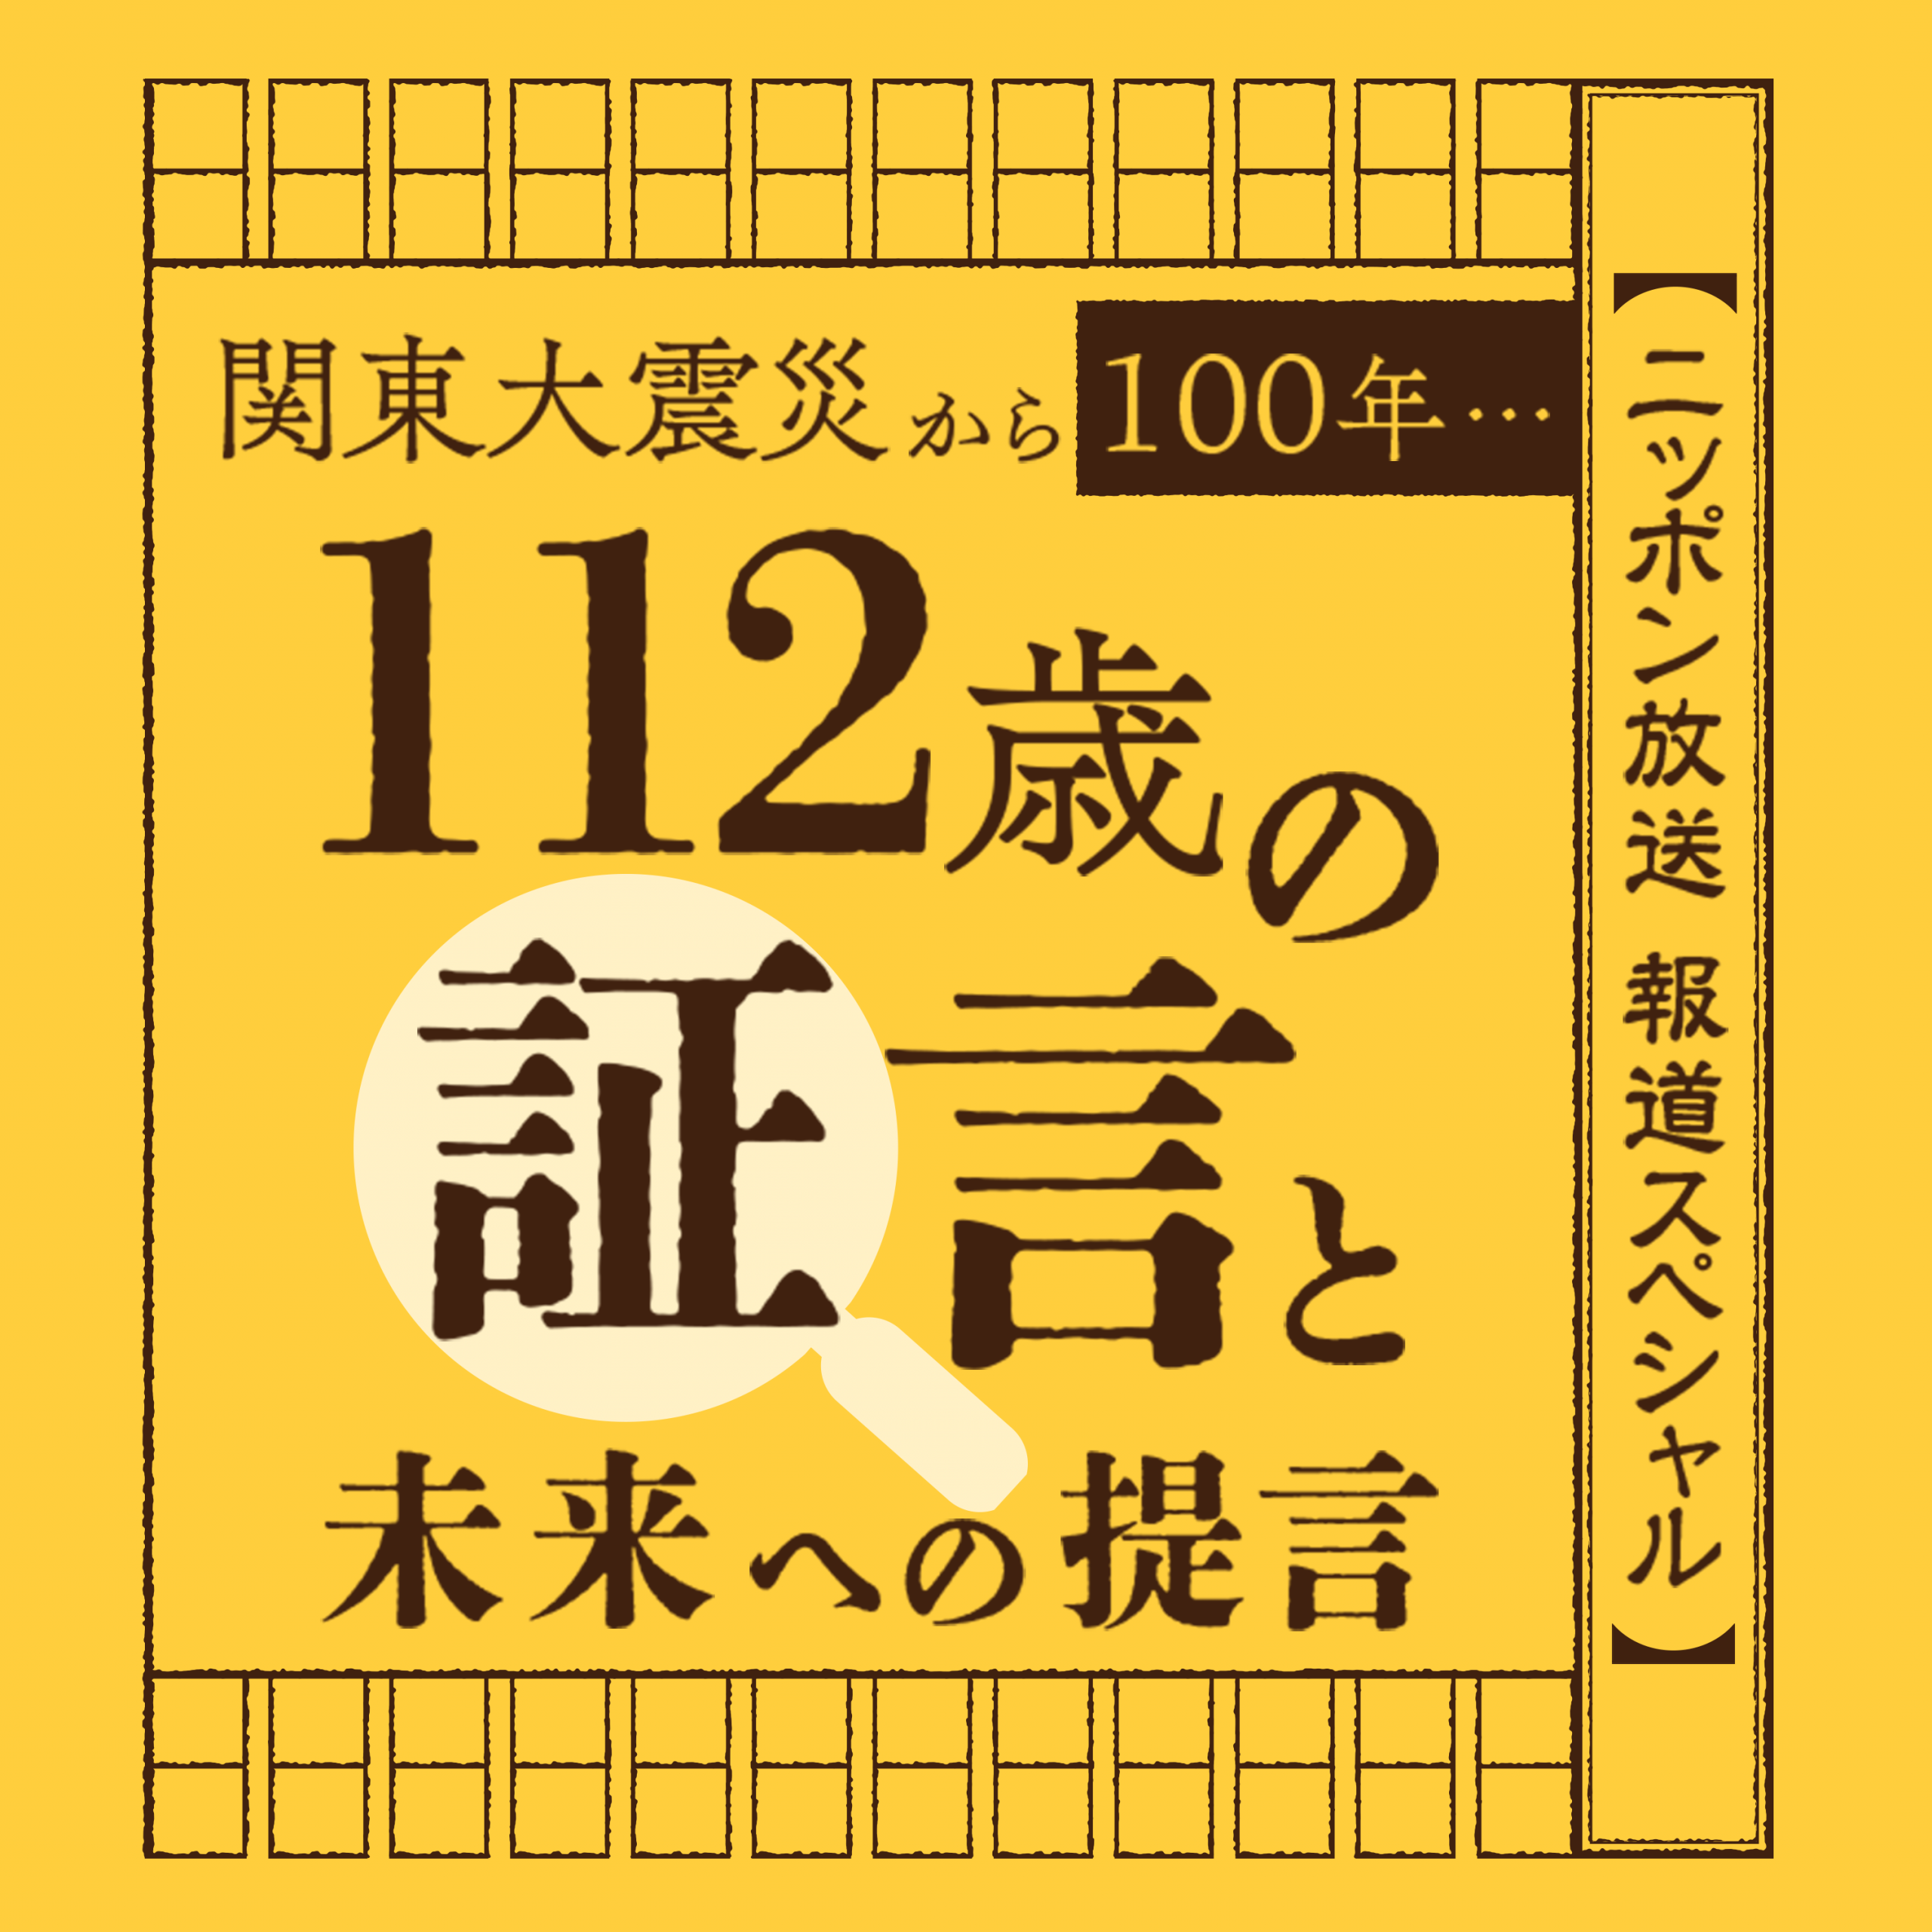 ニッポン放送報道スペシャル 「関東大震災から100年・・・112歳の証言と未来への提言」Podcast